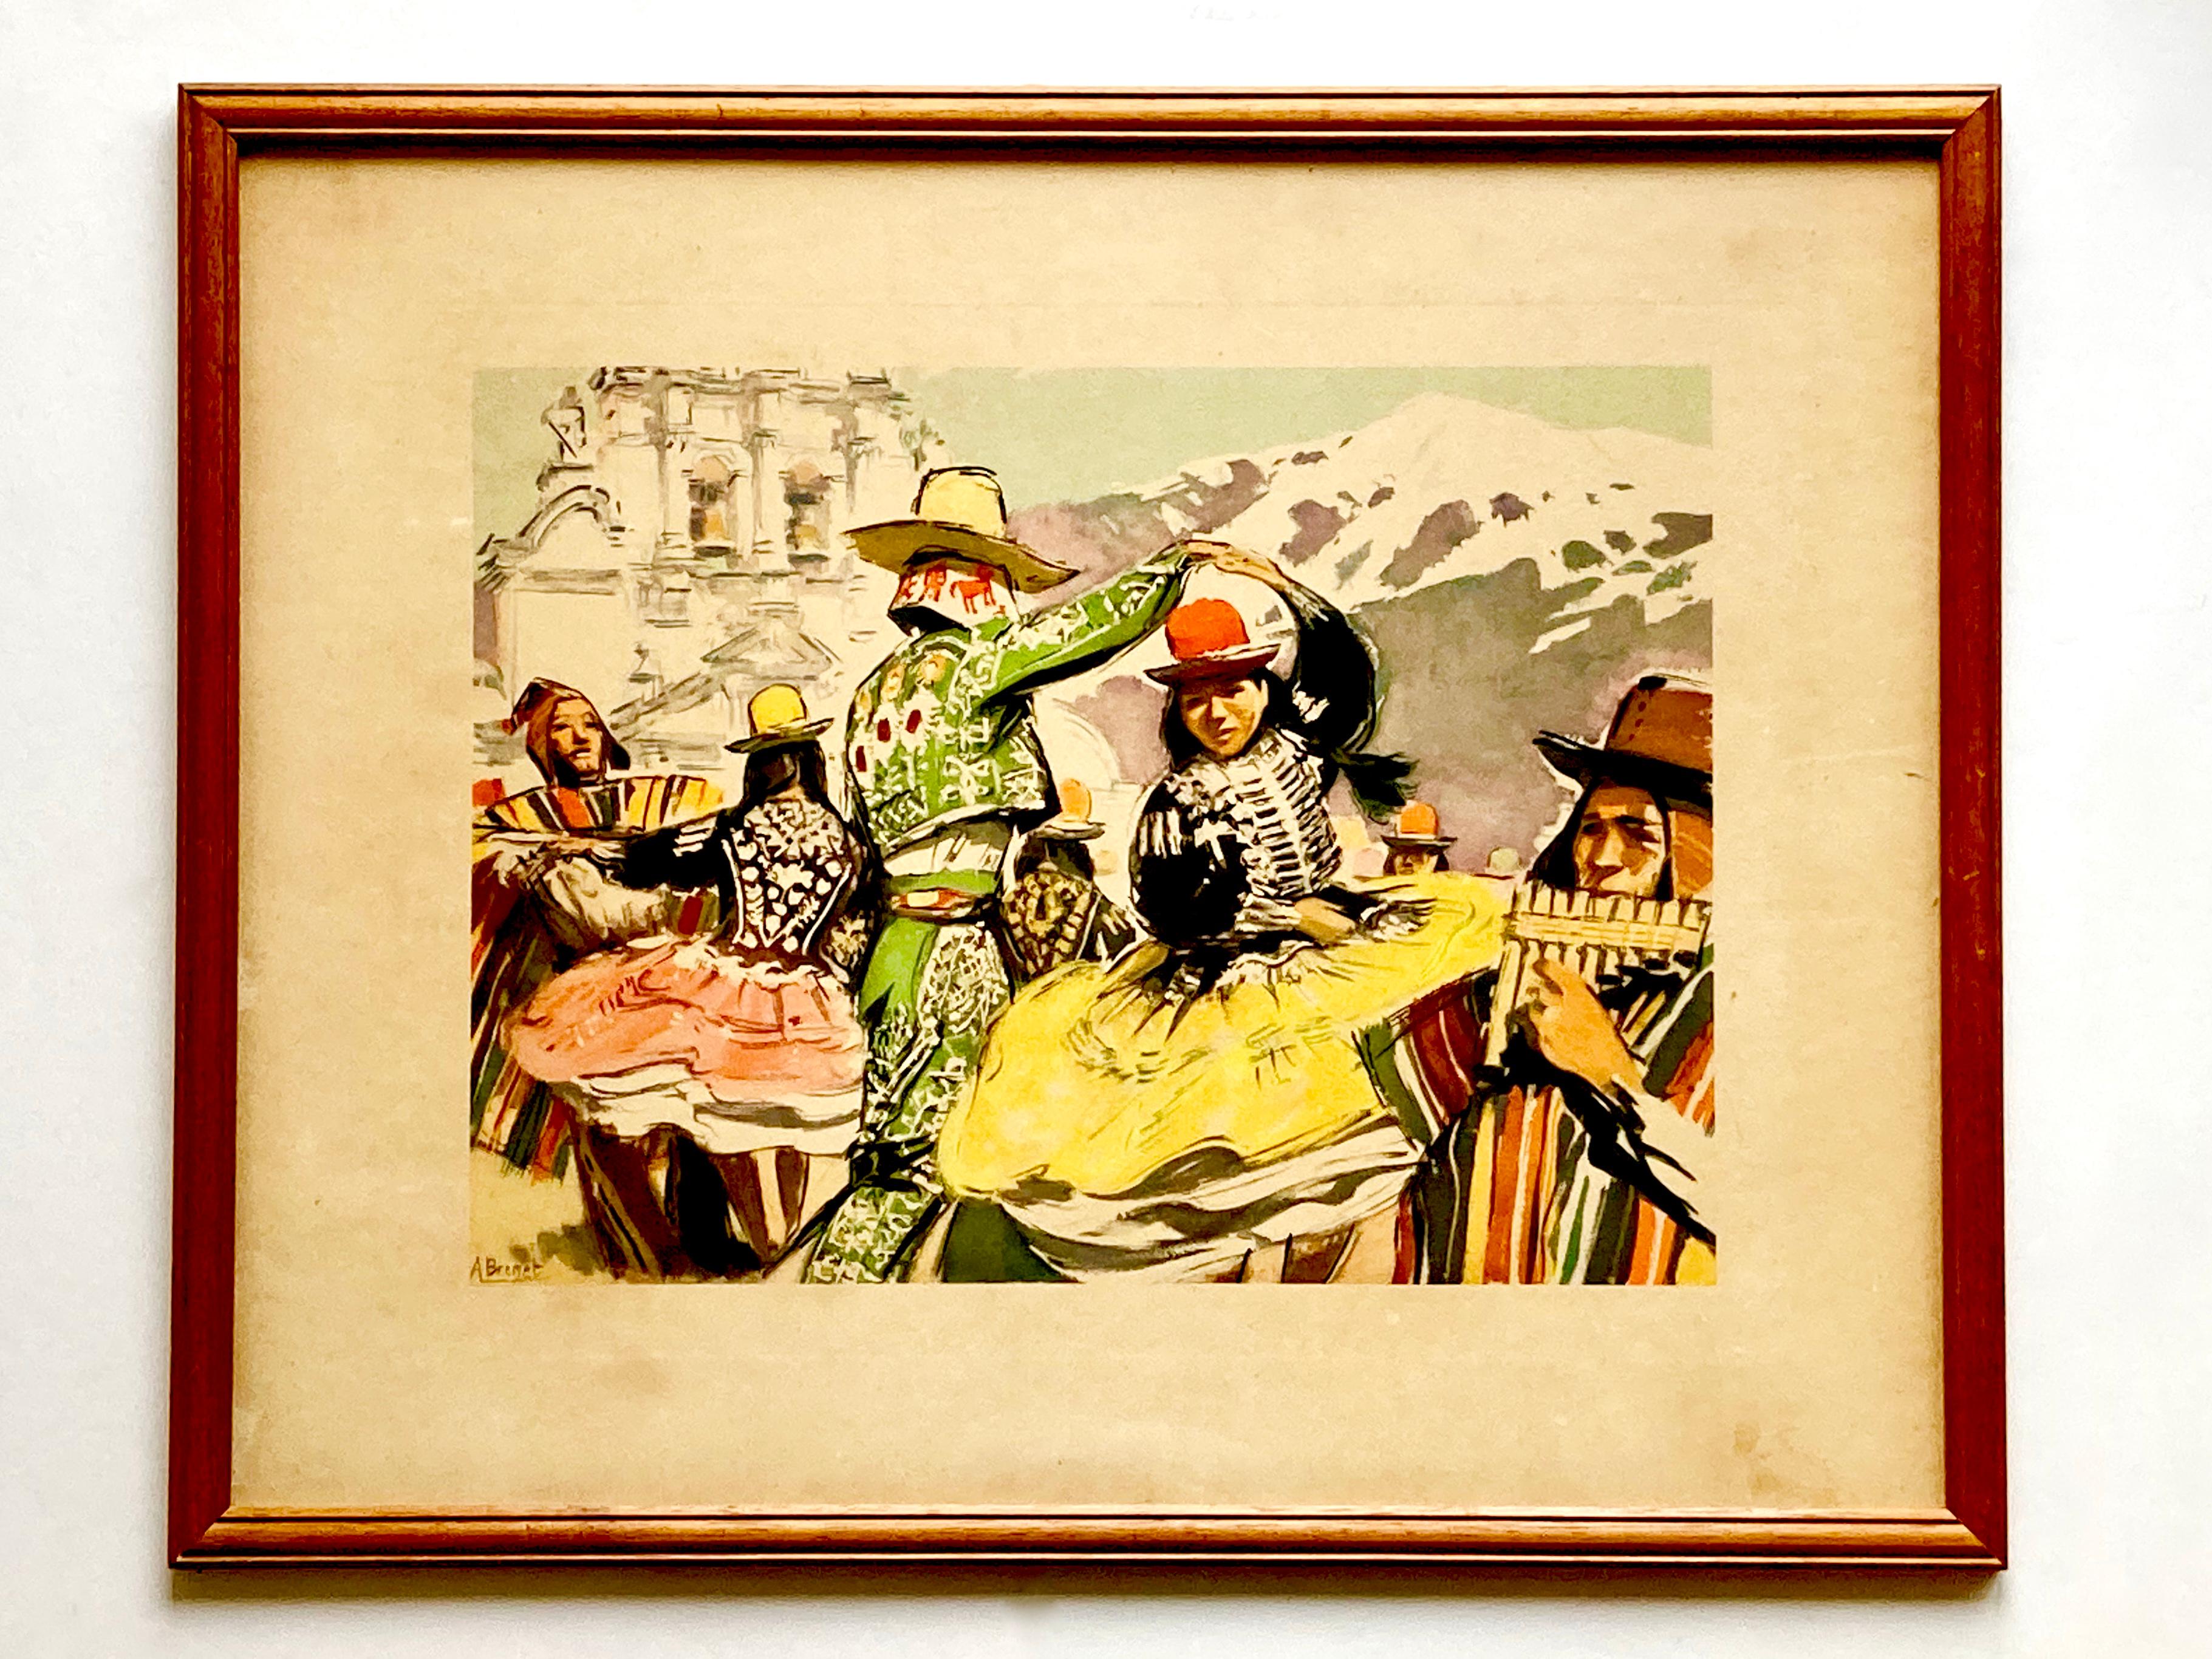 Zwei authentische, gerahmte, vollfarbige Drucke aus den 1950er Jahren nach Originalen des französischen Künstlers Albert Brenet (1903-2005). Das eine zeigt eine farbenfrohe Szene aus Thailand und das andere aus Bolivien.

Victor Albert Eugène Brenet